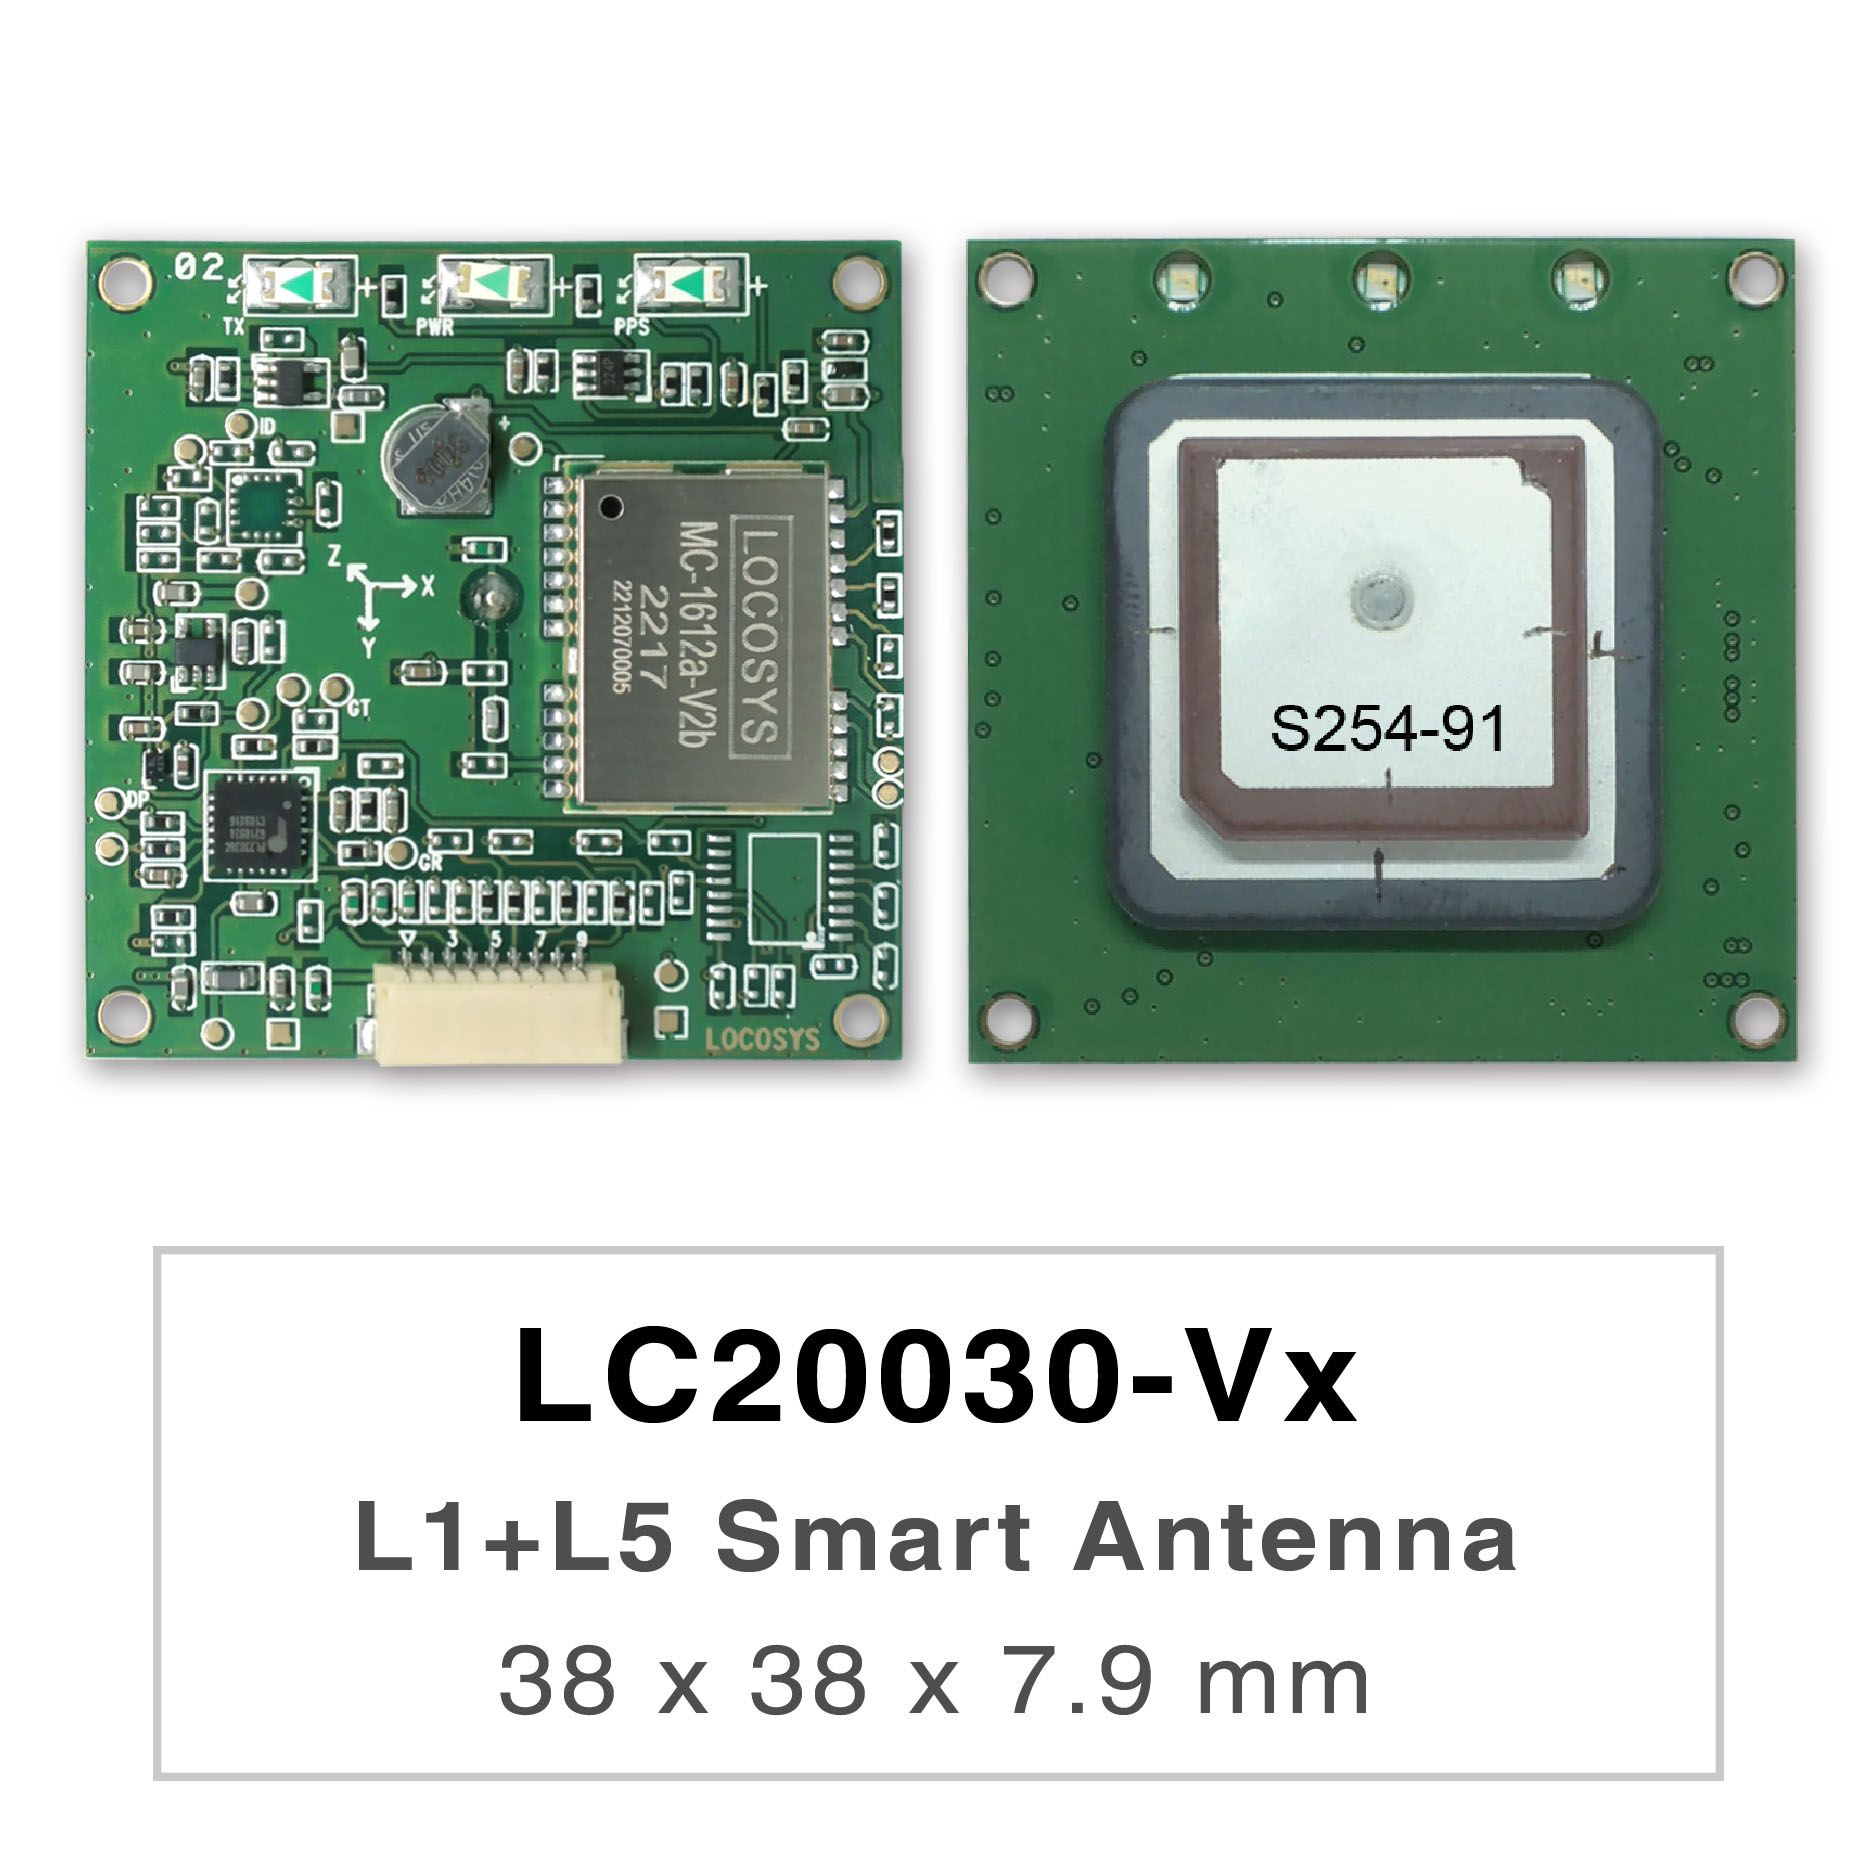 LC2003x-Vxシリーズ製品は高性能のデュアルバンドGNSSスマートアンテナモジュールで、